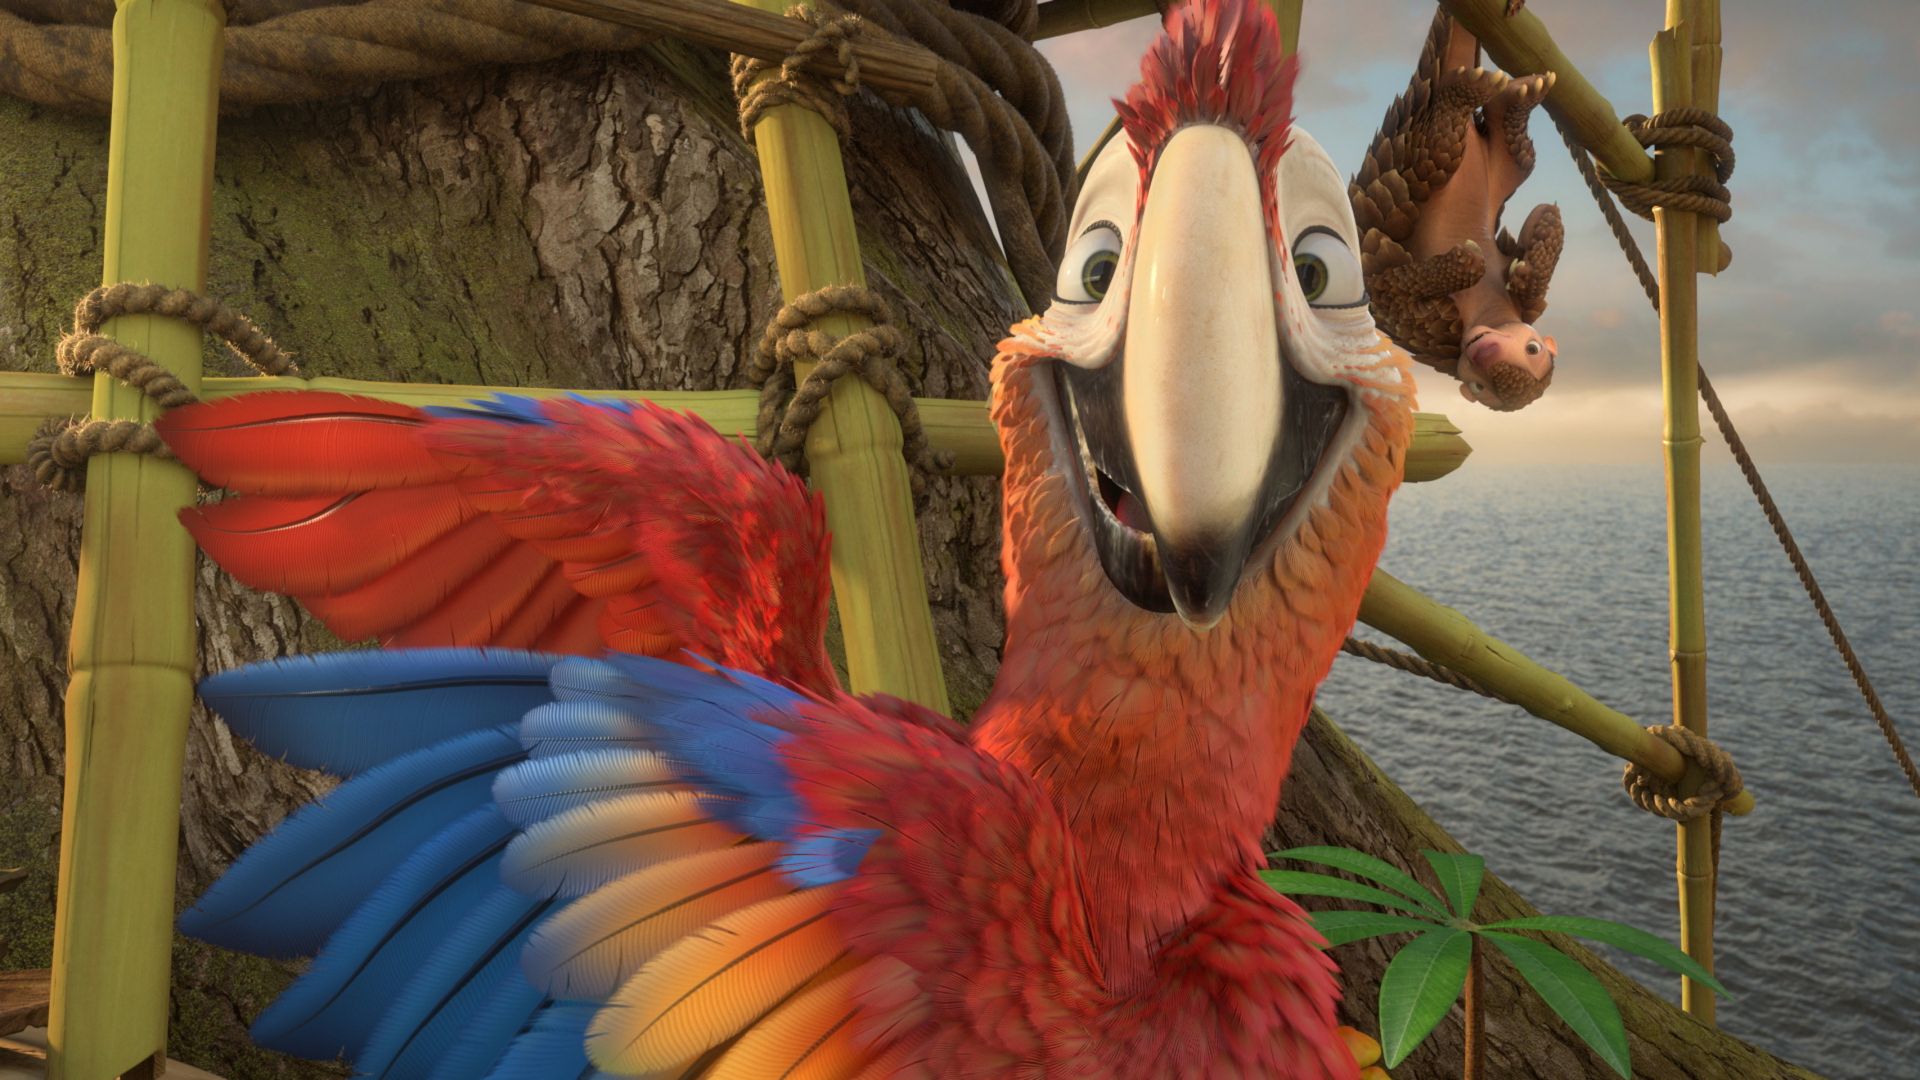 Робинзон Крузо, попугай, лучшие мультфильмы 2016, Robinson Crusoe, parrot, Best Animation Movies, cartoon (horizontal)